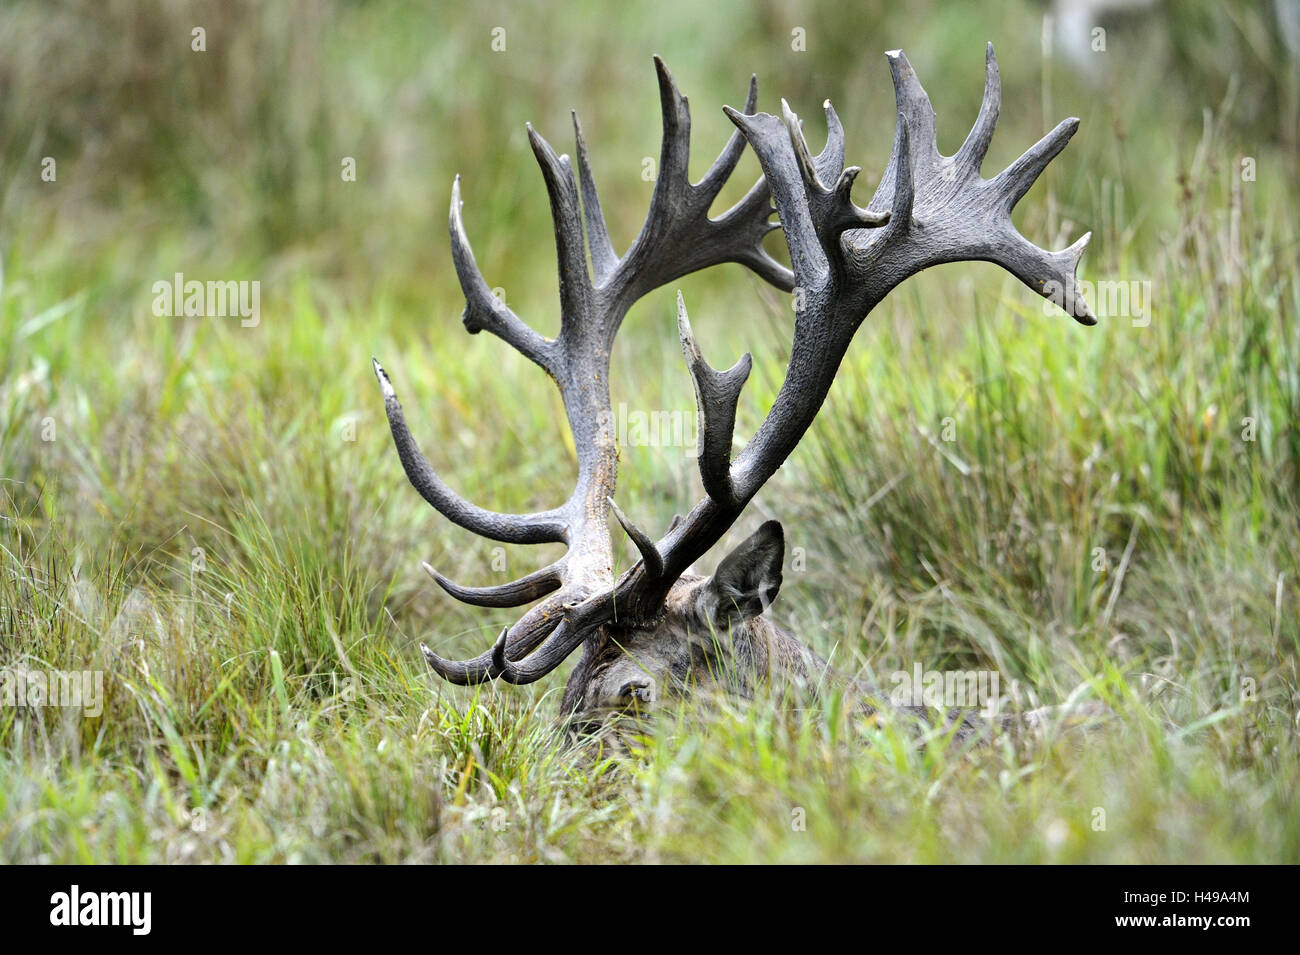 Grass, red deer, Cervus elaphus, antlers, detail, forest, Stock Photo